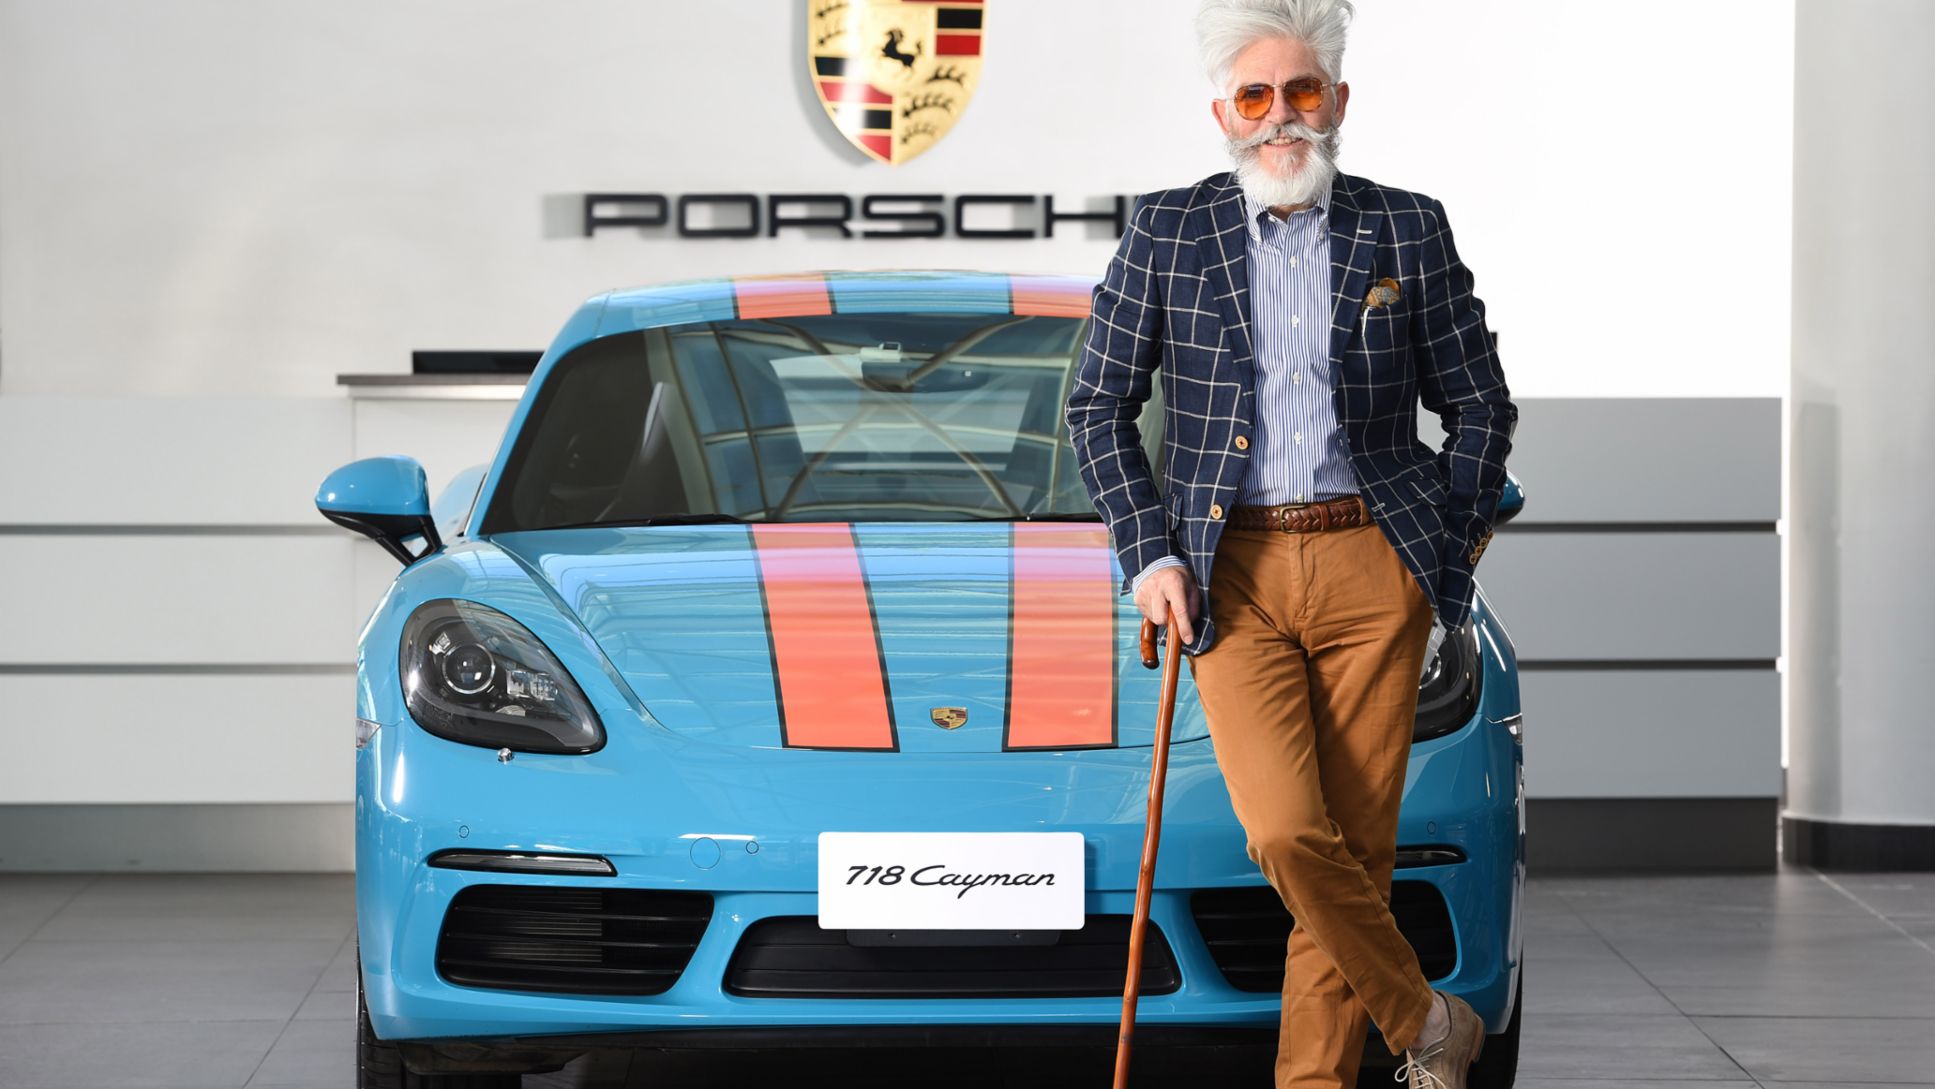 Porsche reafirma alianza con su embajador Federico Sánchez